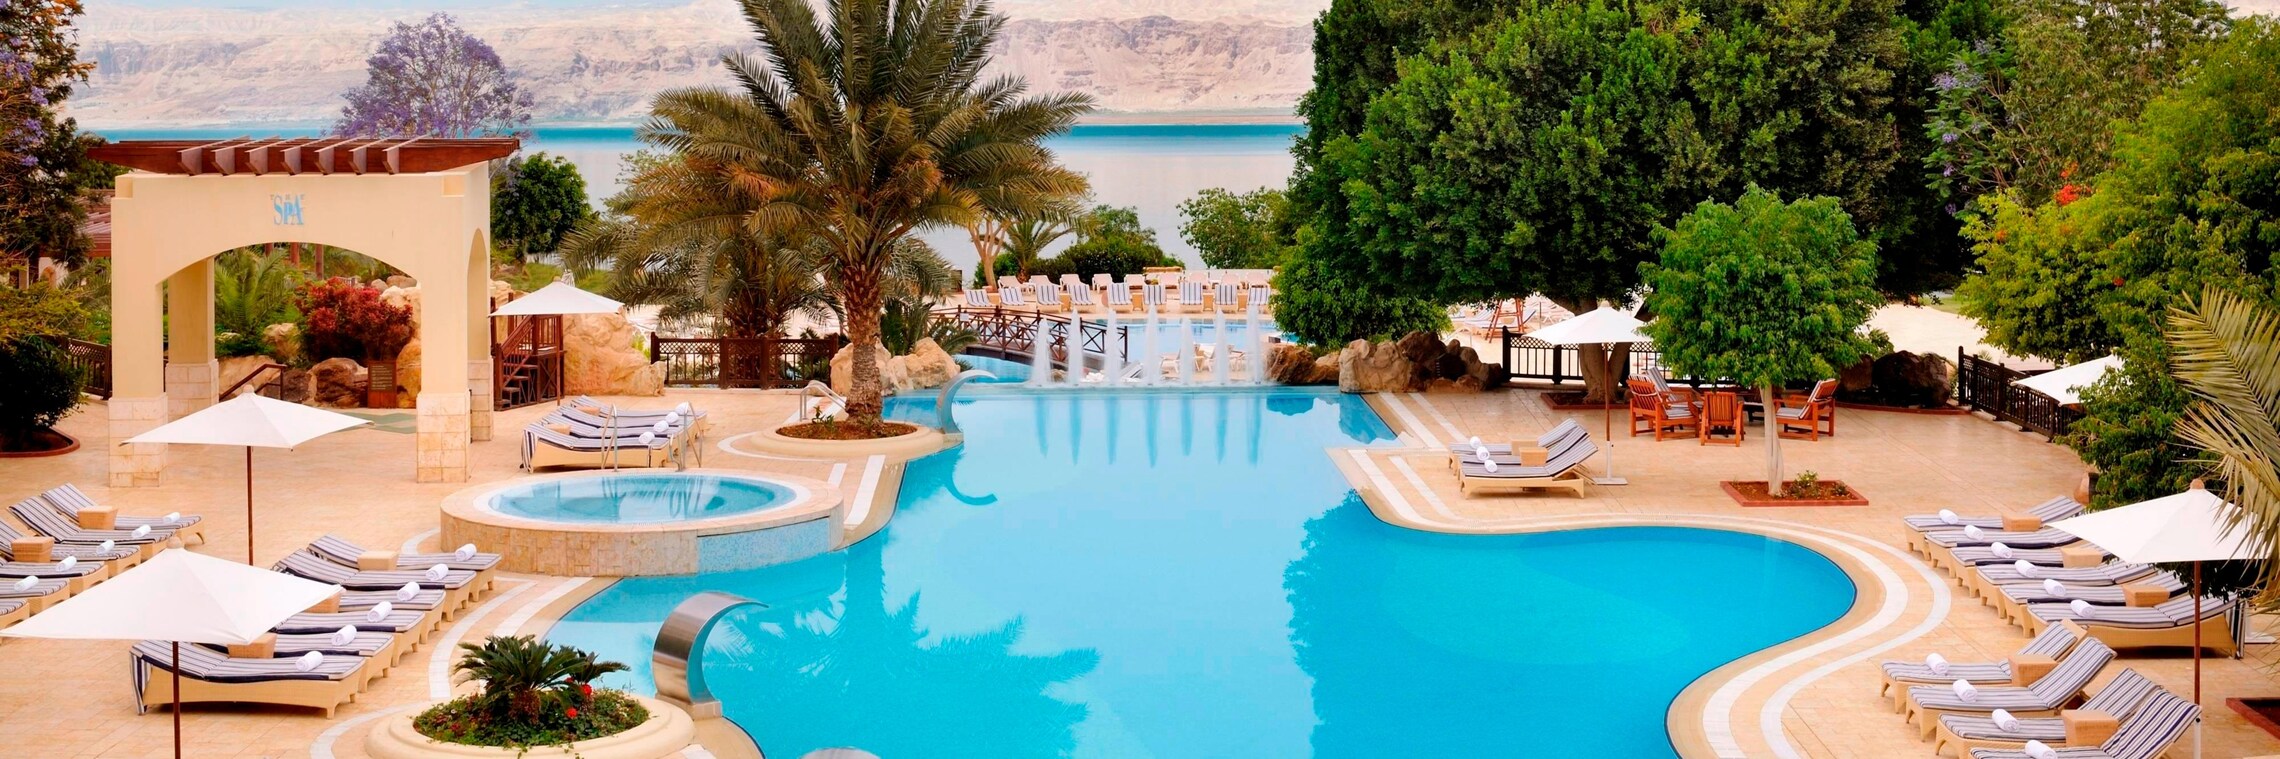 Resort Outdoor Pool